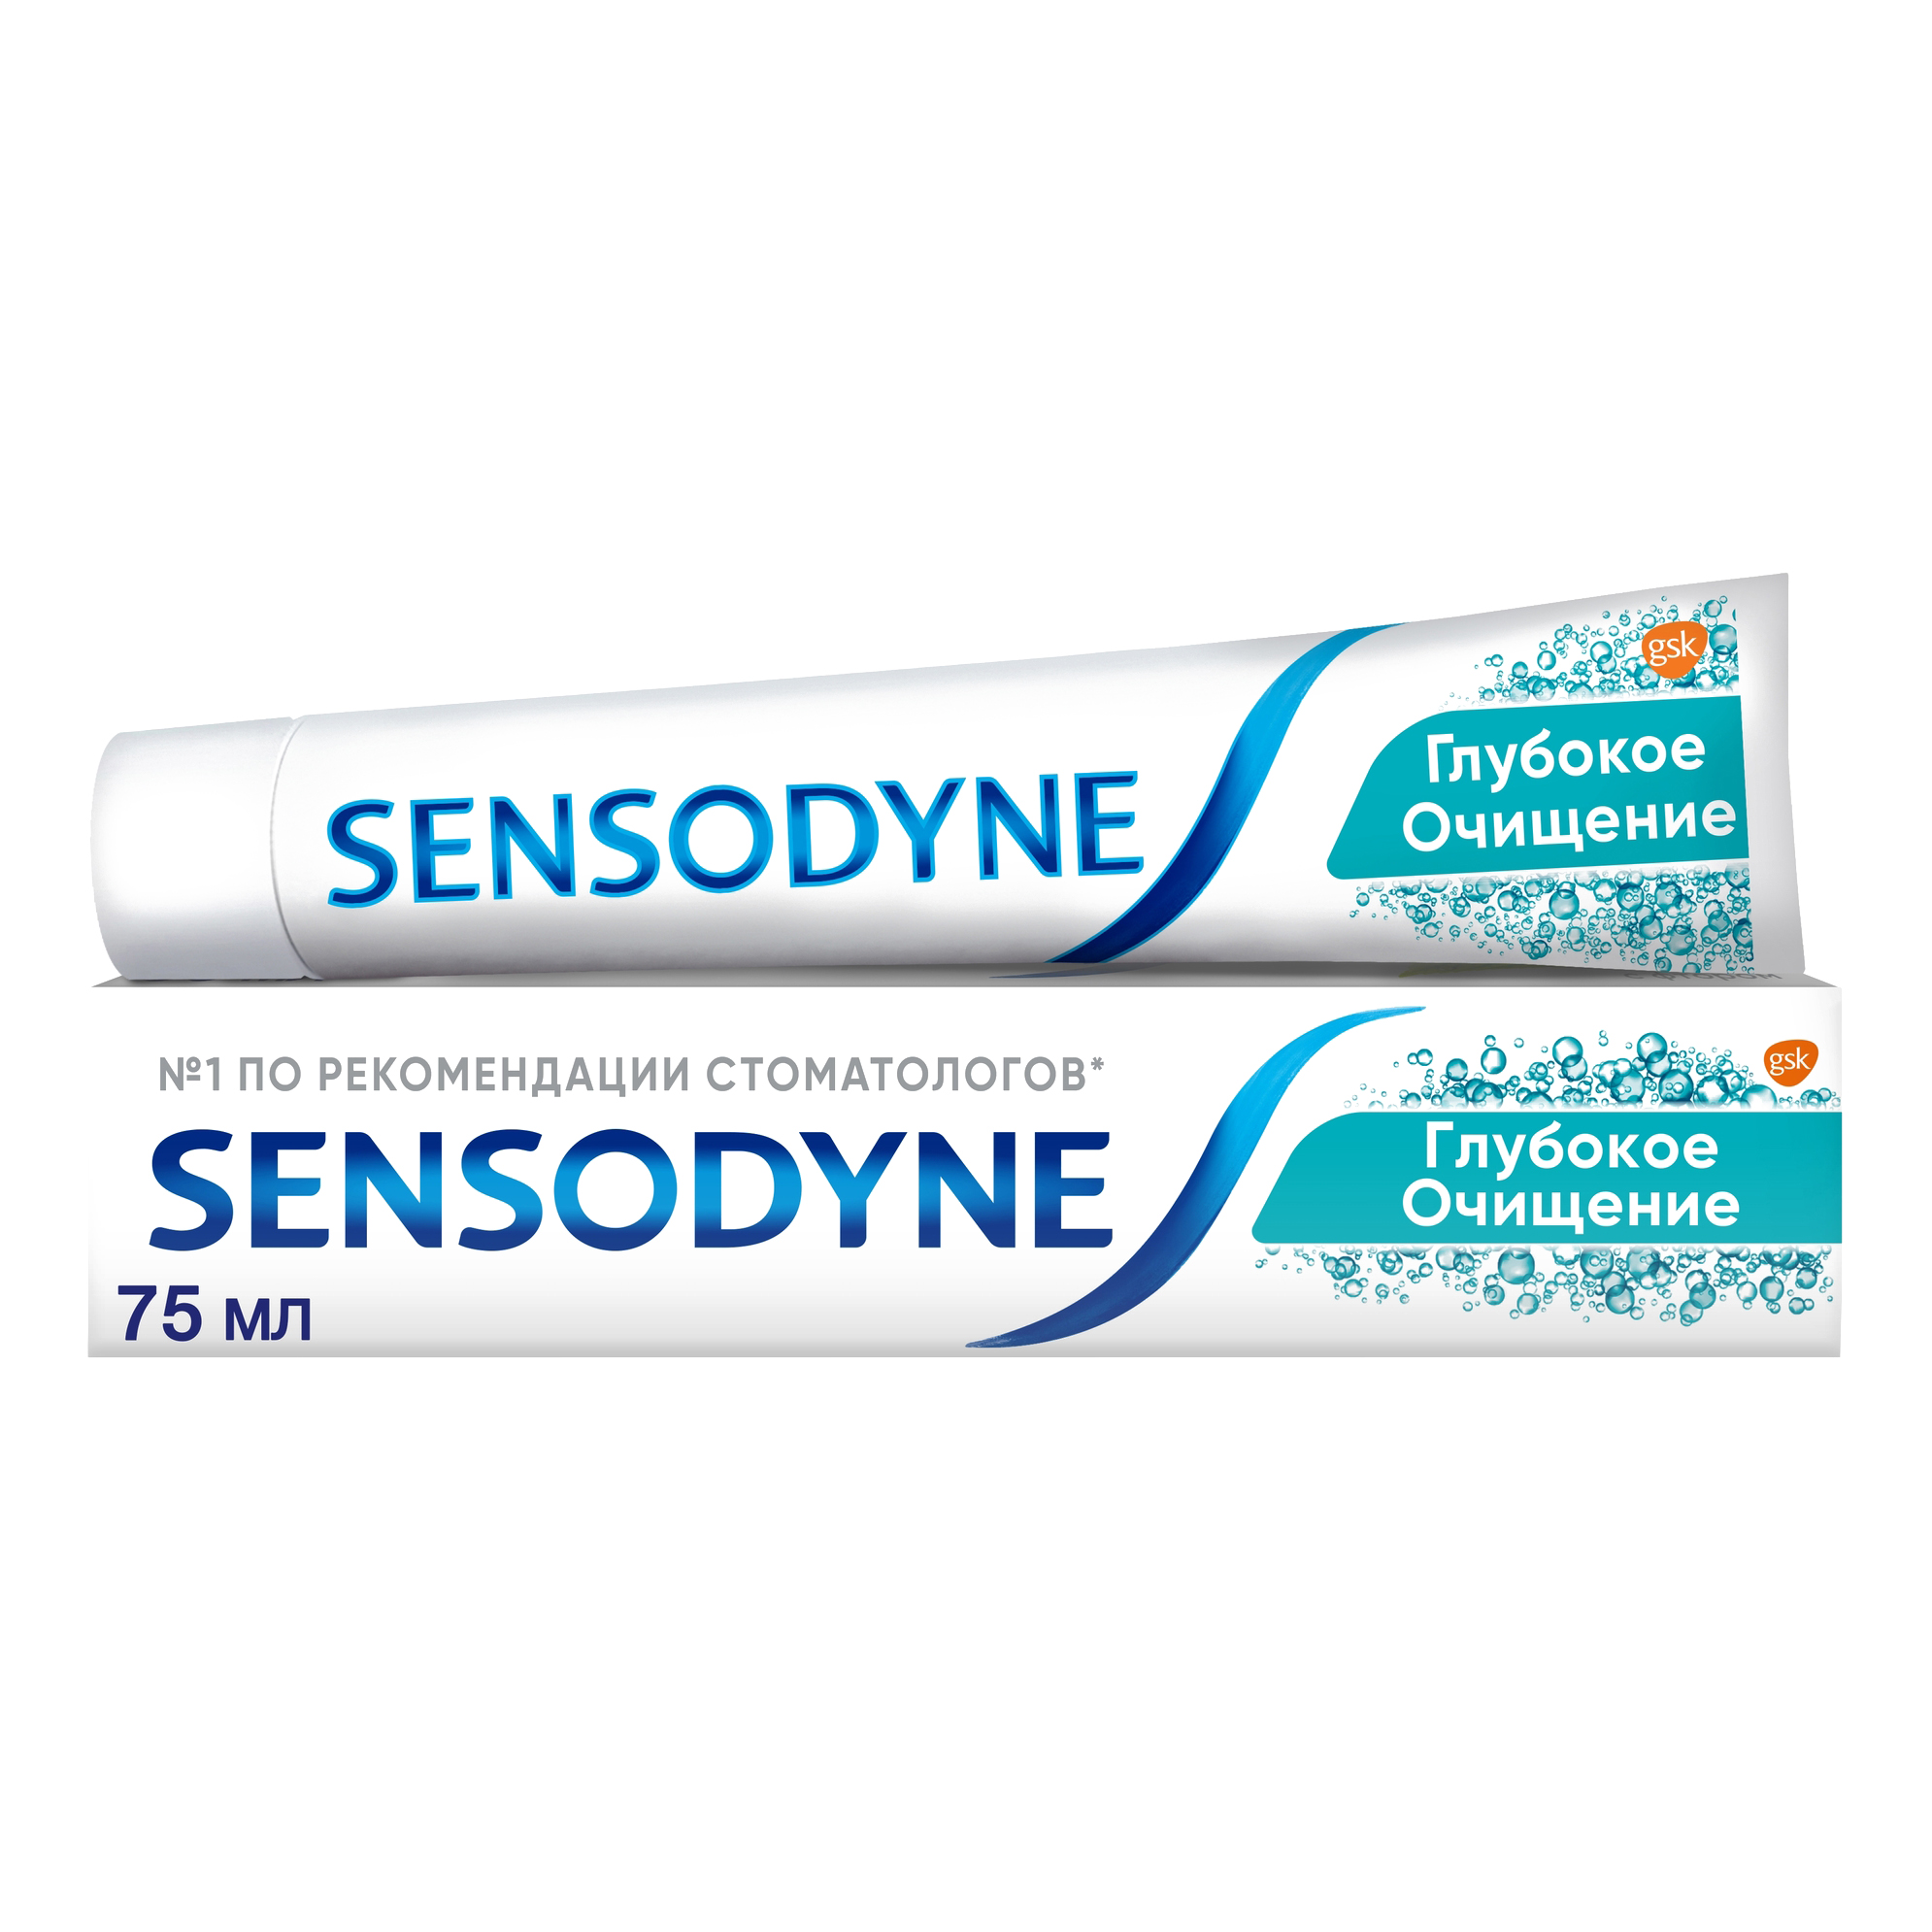 Зубная паста Sensodyne Глубокое Очищение для чувствительных зубов с фтором, 75 мл паста зубная sensodyne сенсодин глубокое очищение для чувствительных зубов 75мл